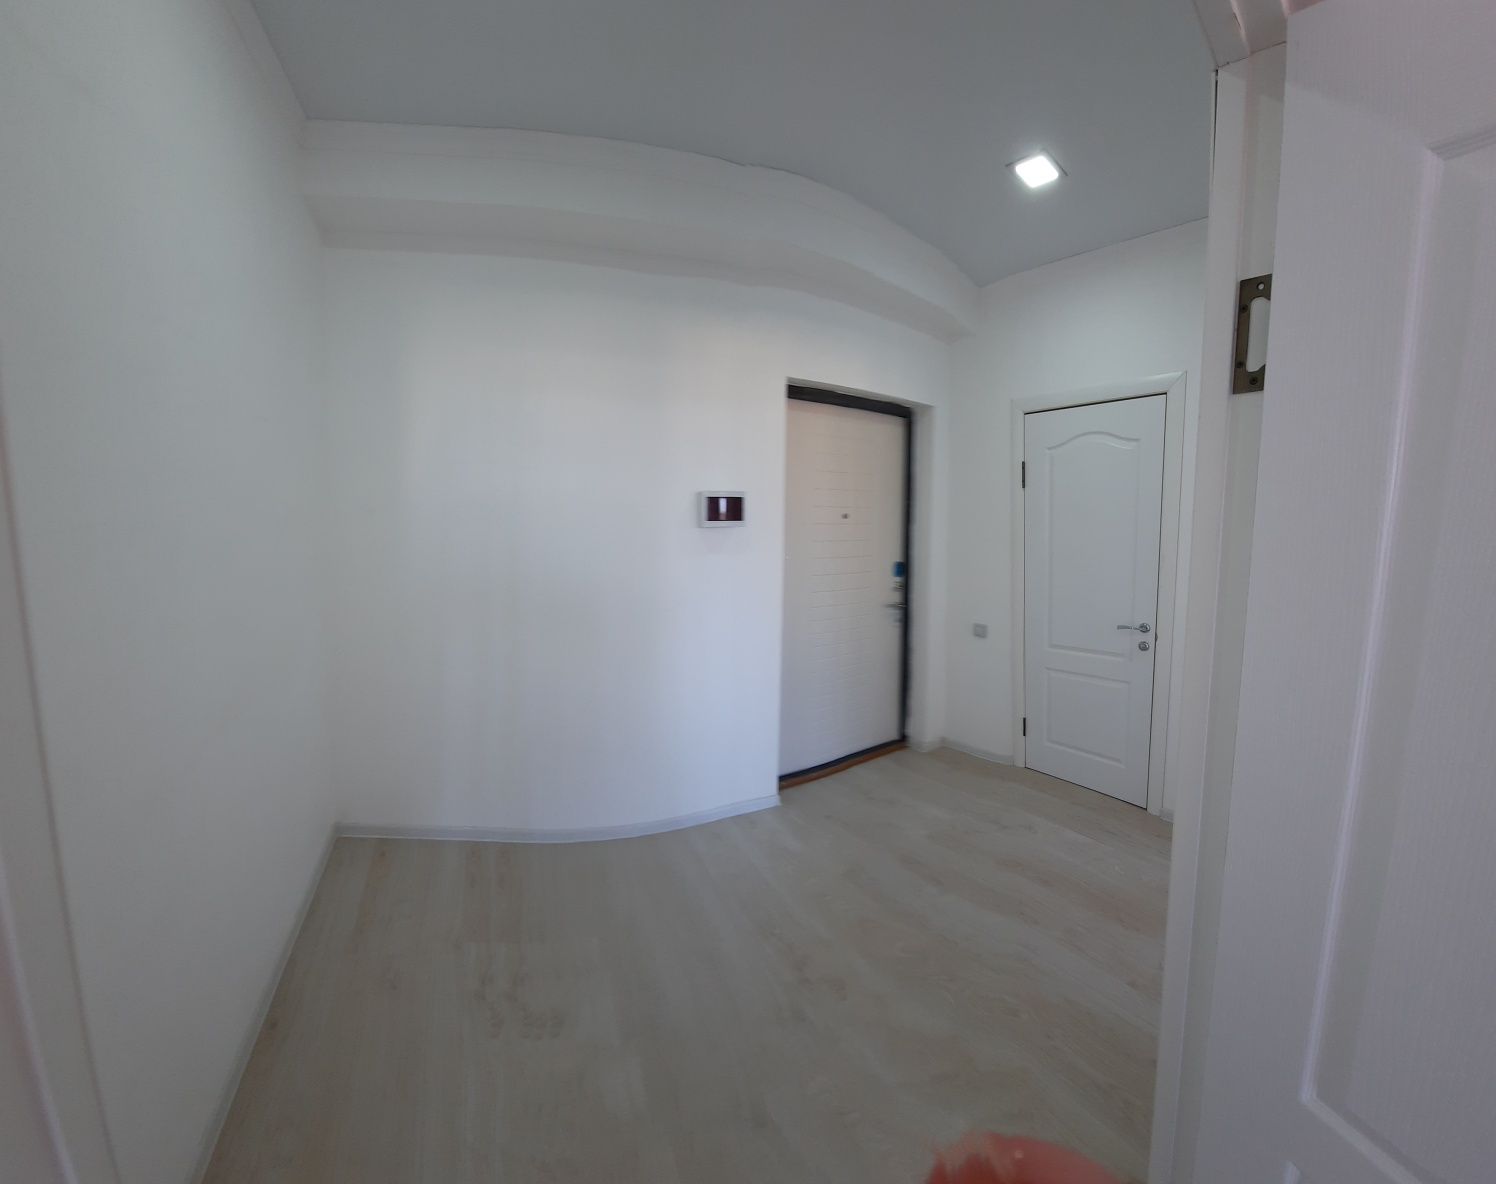 Продам 1-комнатную квартиру в ЖК GRES PARK